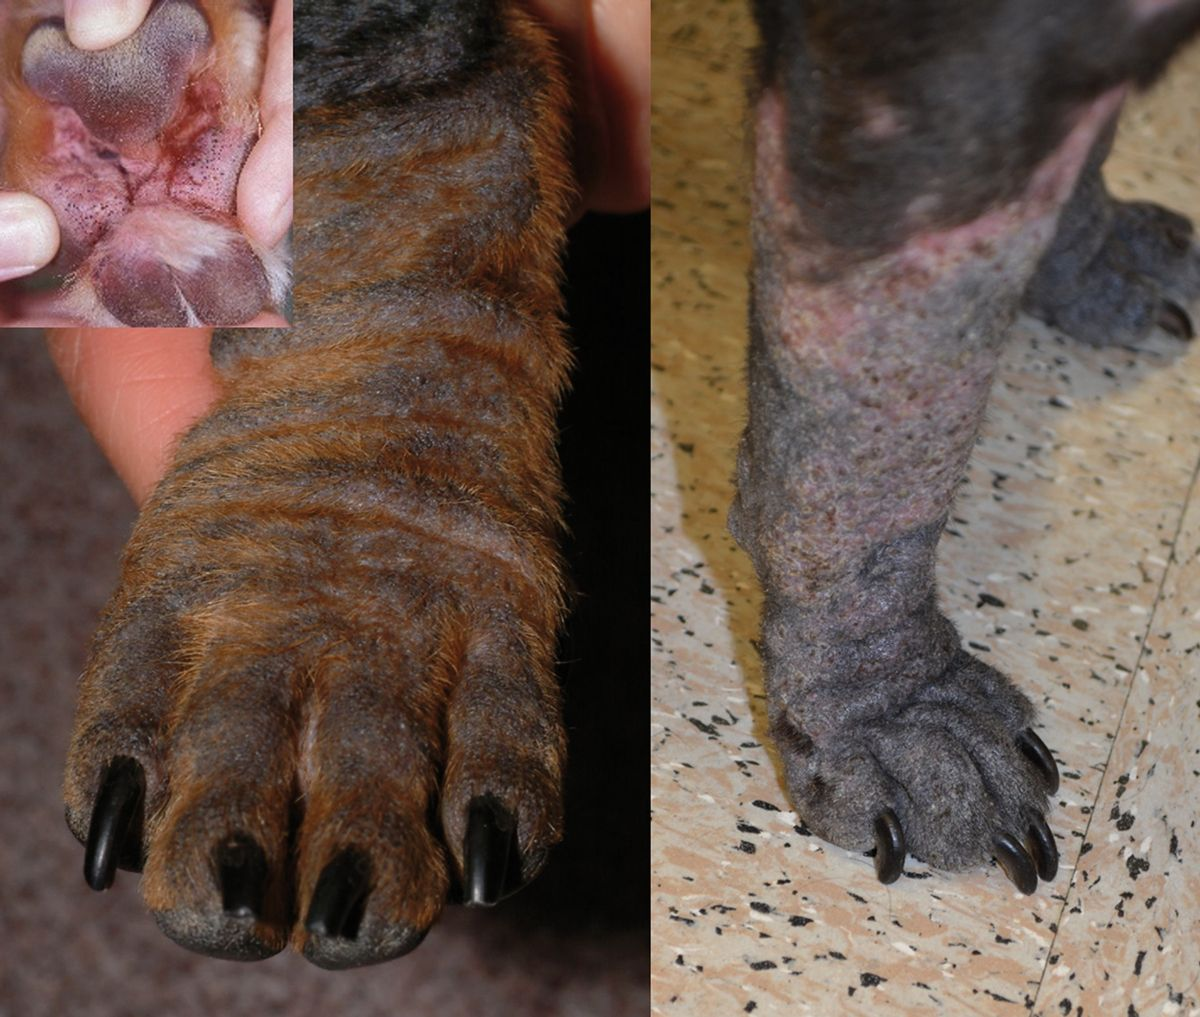 Figue 6. Muchos perros con demodicosis desarrollan comedones, con una coloración gris característica. © Rosanna Marsella